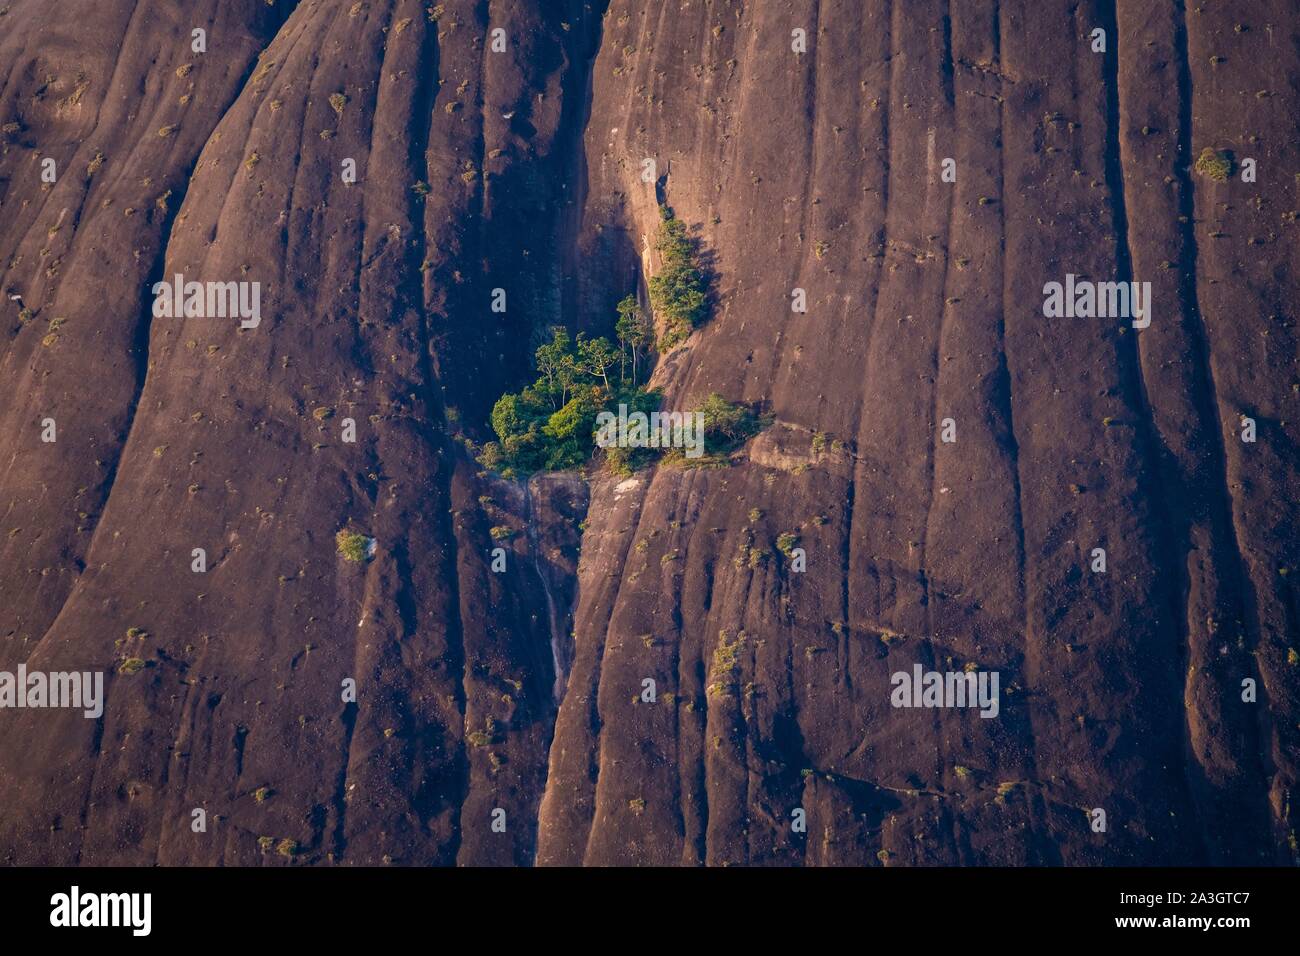 Colombia, Guainia, Inirida, Cerros de Mavicure, grove on the Cerro Pajarito Stock Photo